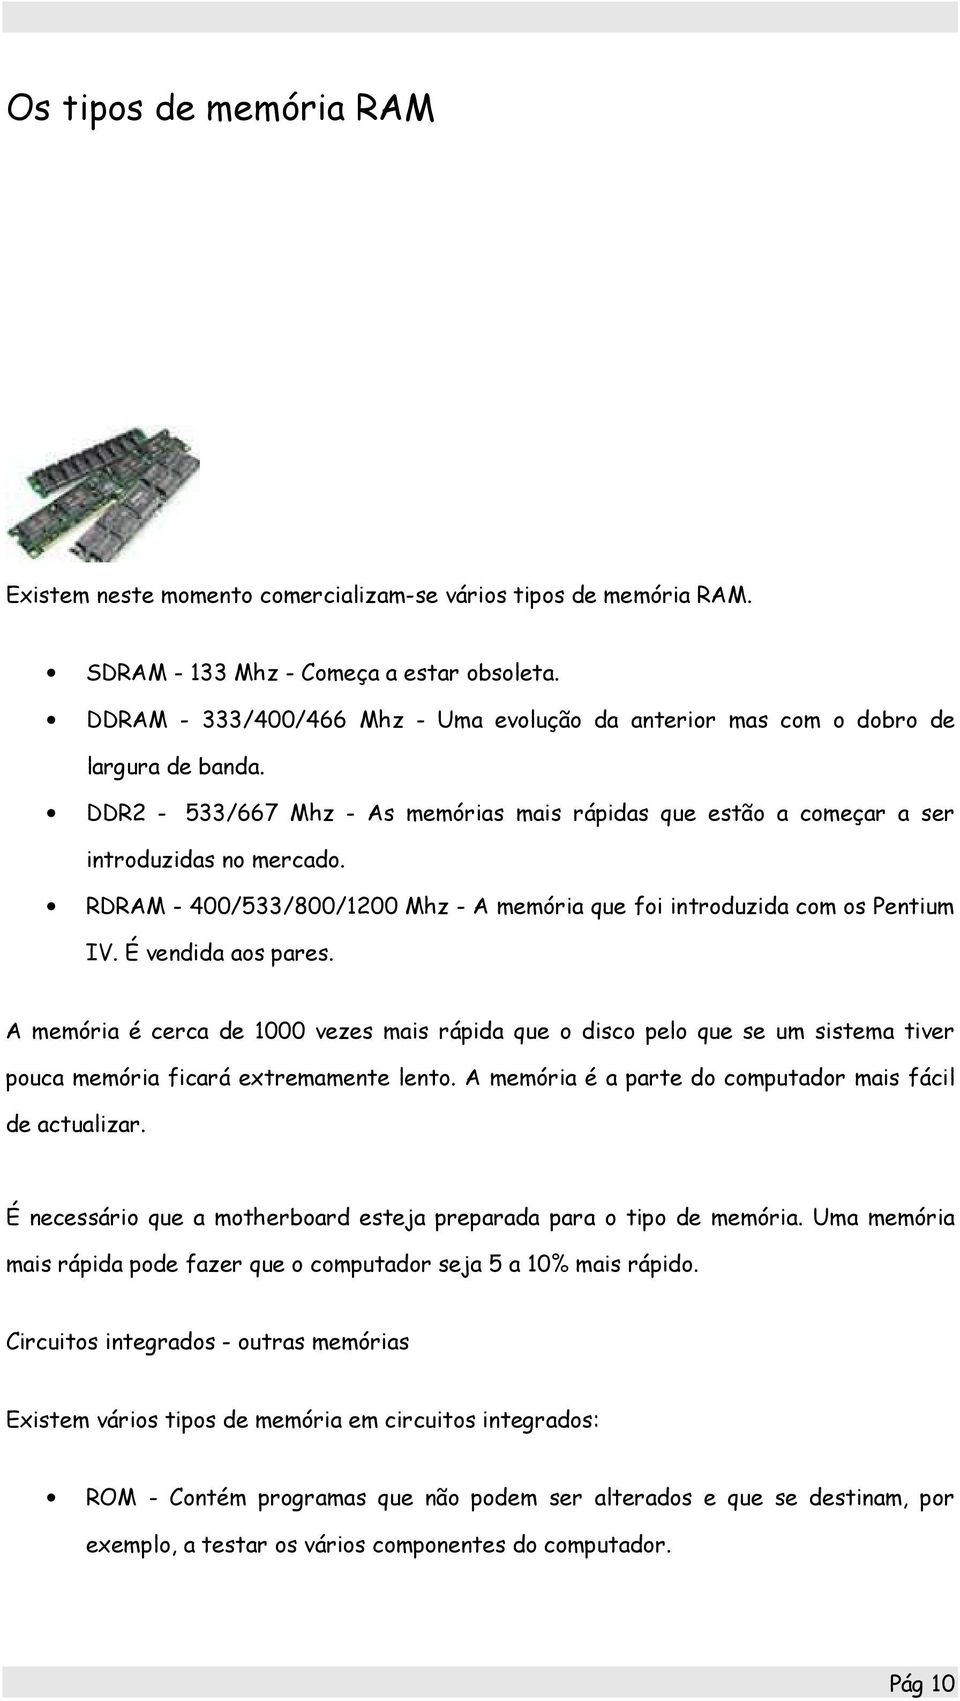 RDRAM - 400/533/800/1200 Mhz - A memória que foi introduzida com os Pentium IV. É vendida aos pares.